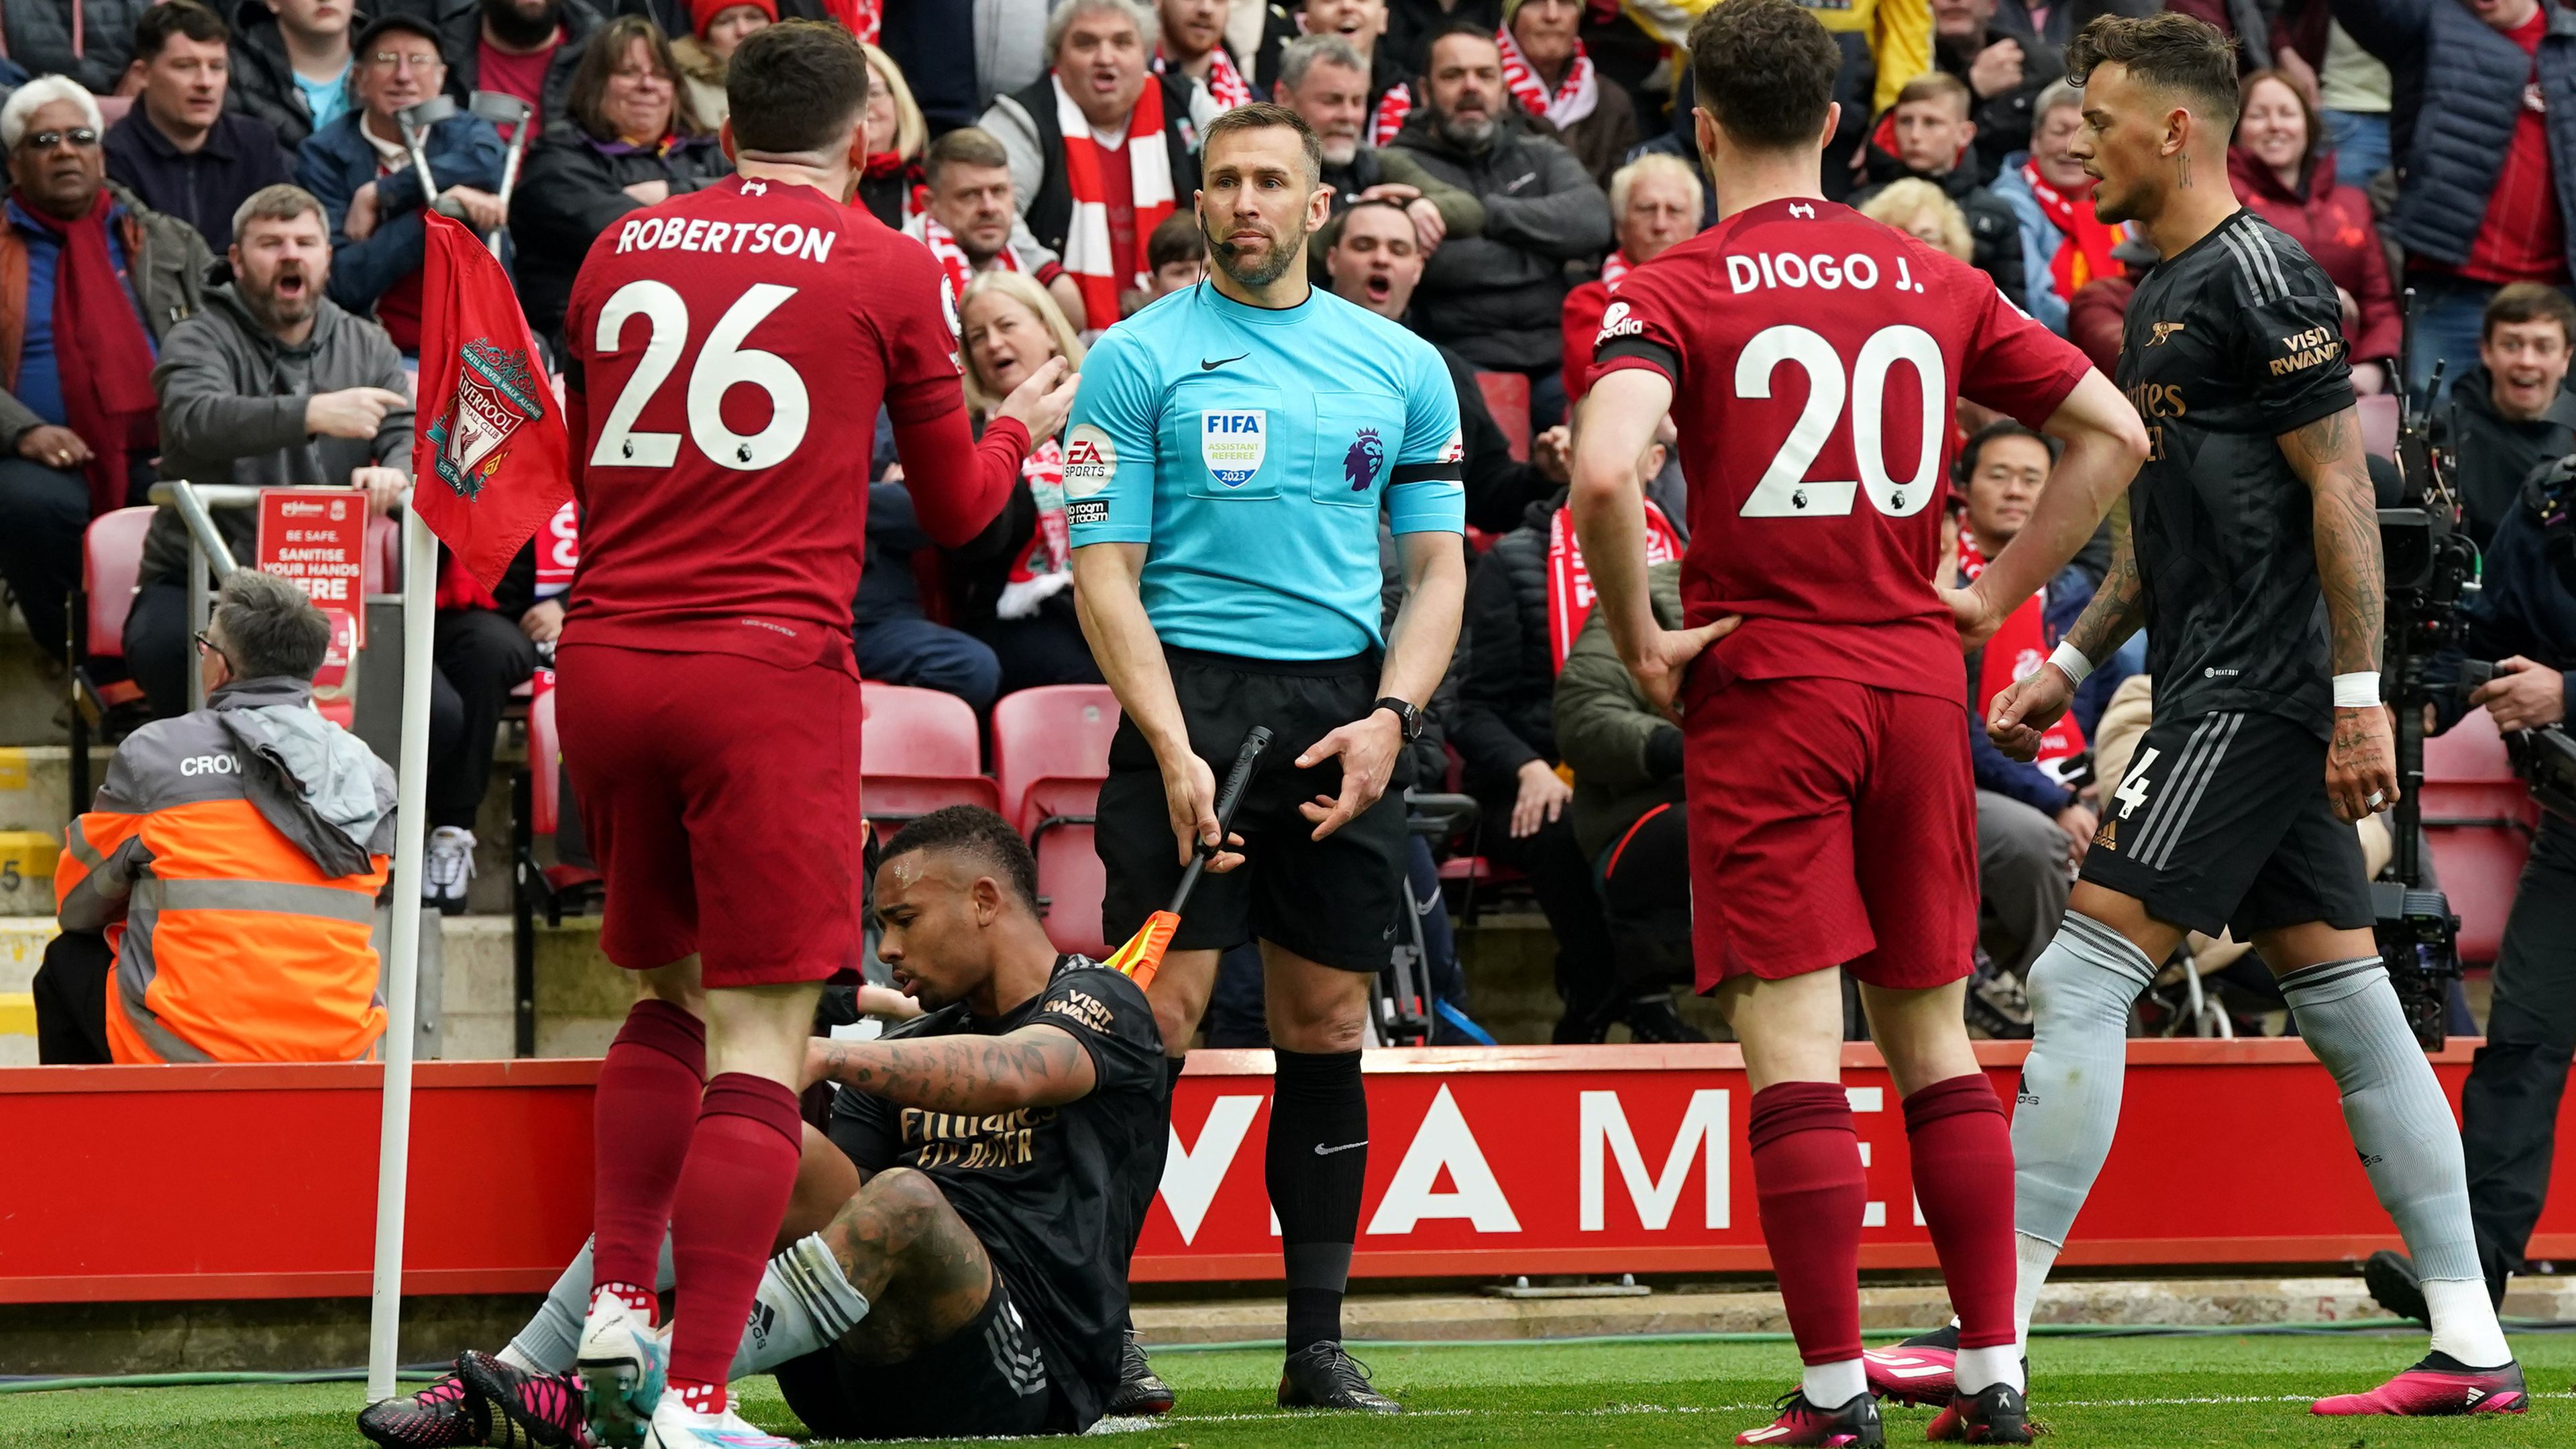 Itt még csak nem volt fizikai kontaktus a partjelző és a Liverpool játékosa között (Fotó: Getty Images)